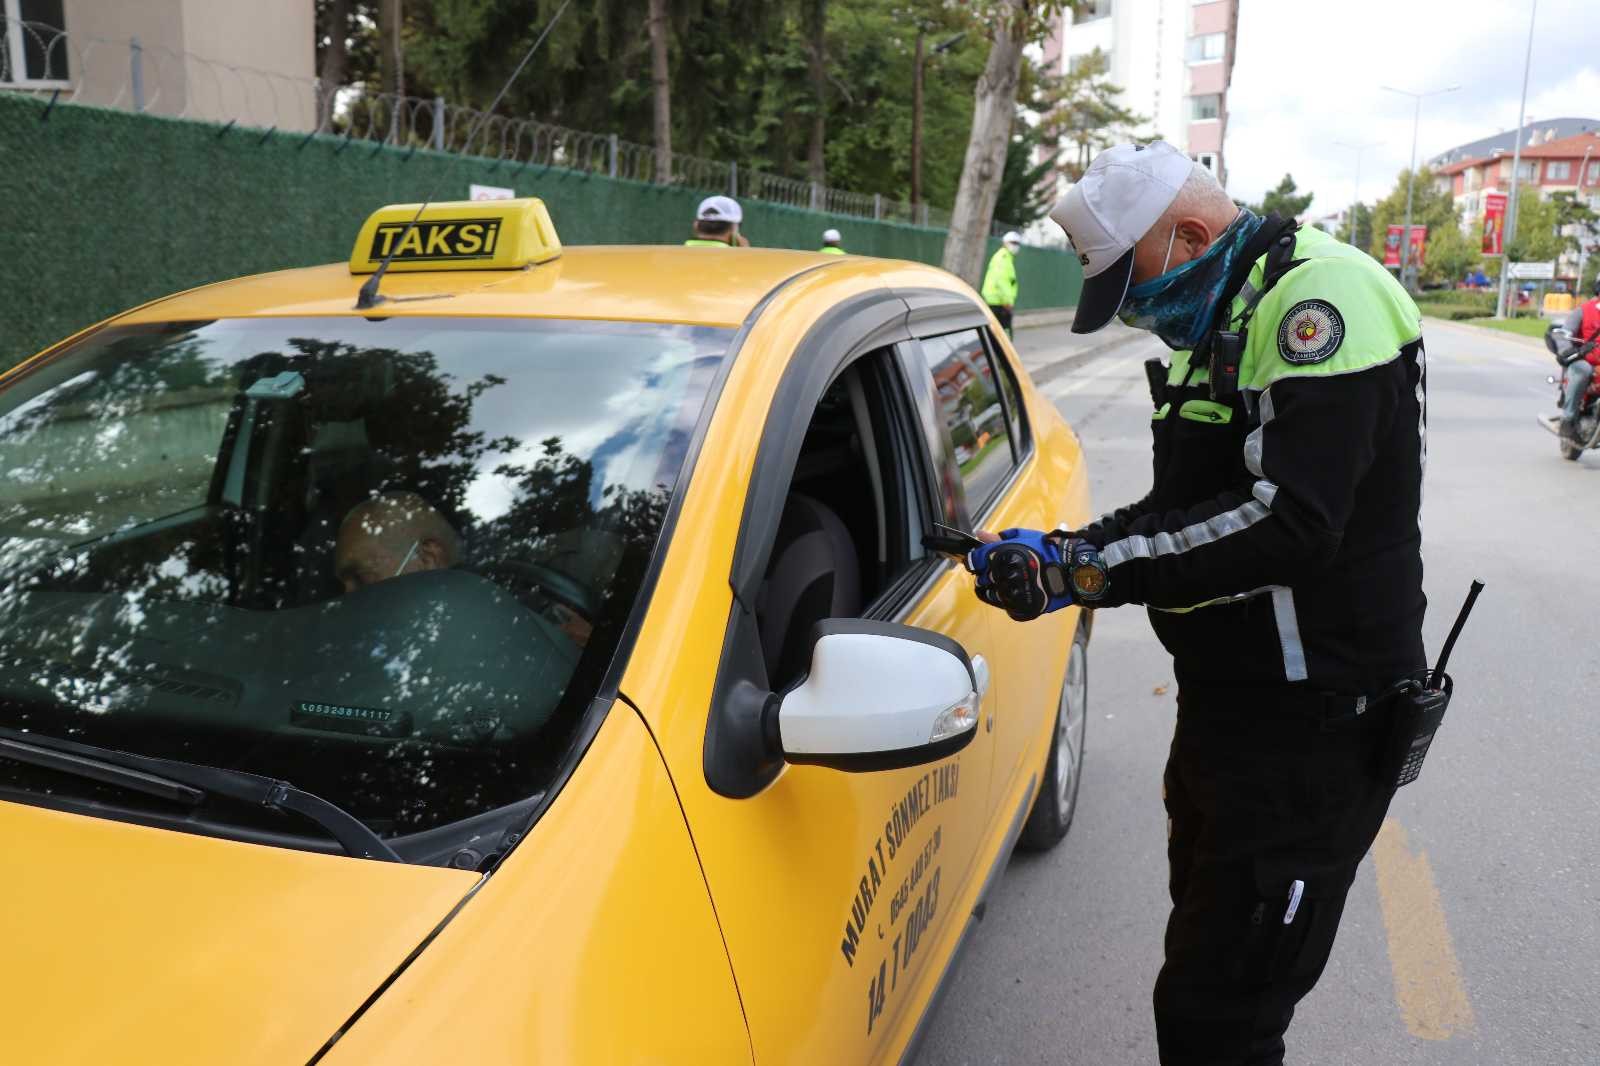 Taksimetre açmayan taksicilere para cezası #bolu